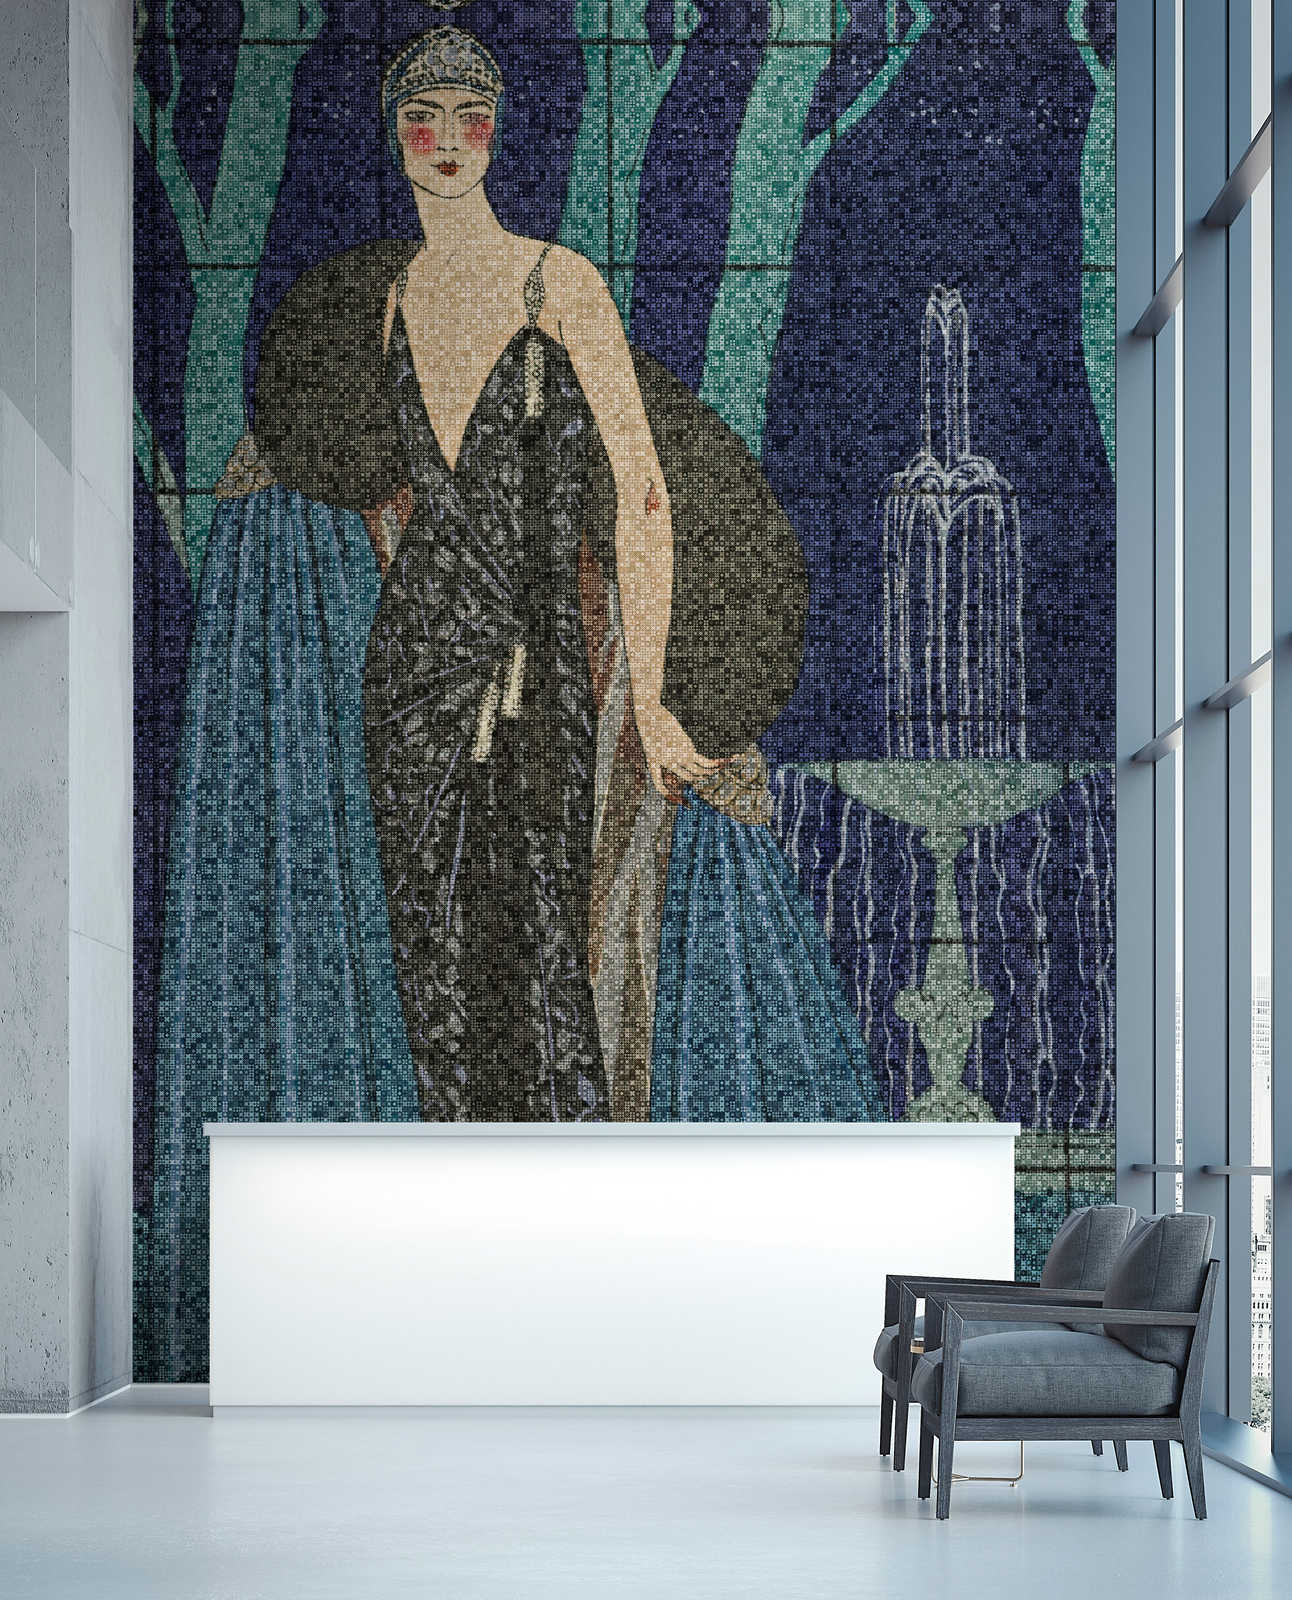             Scala 3 - Art Deco mural elegant women motif
        